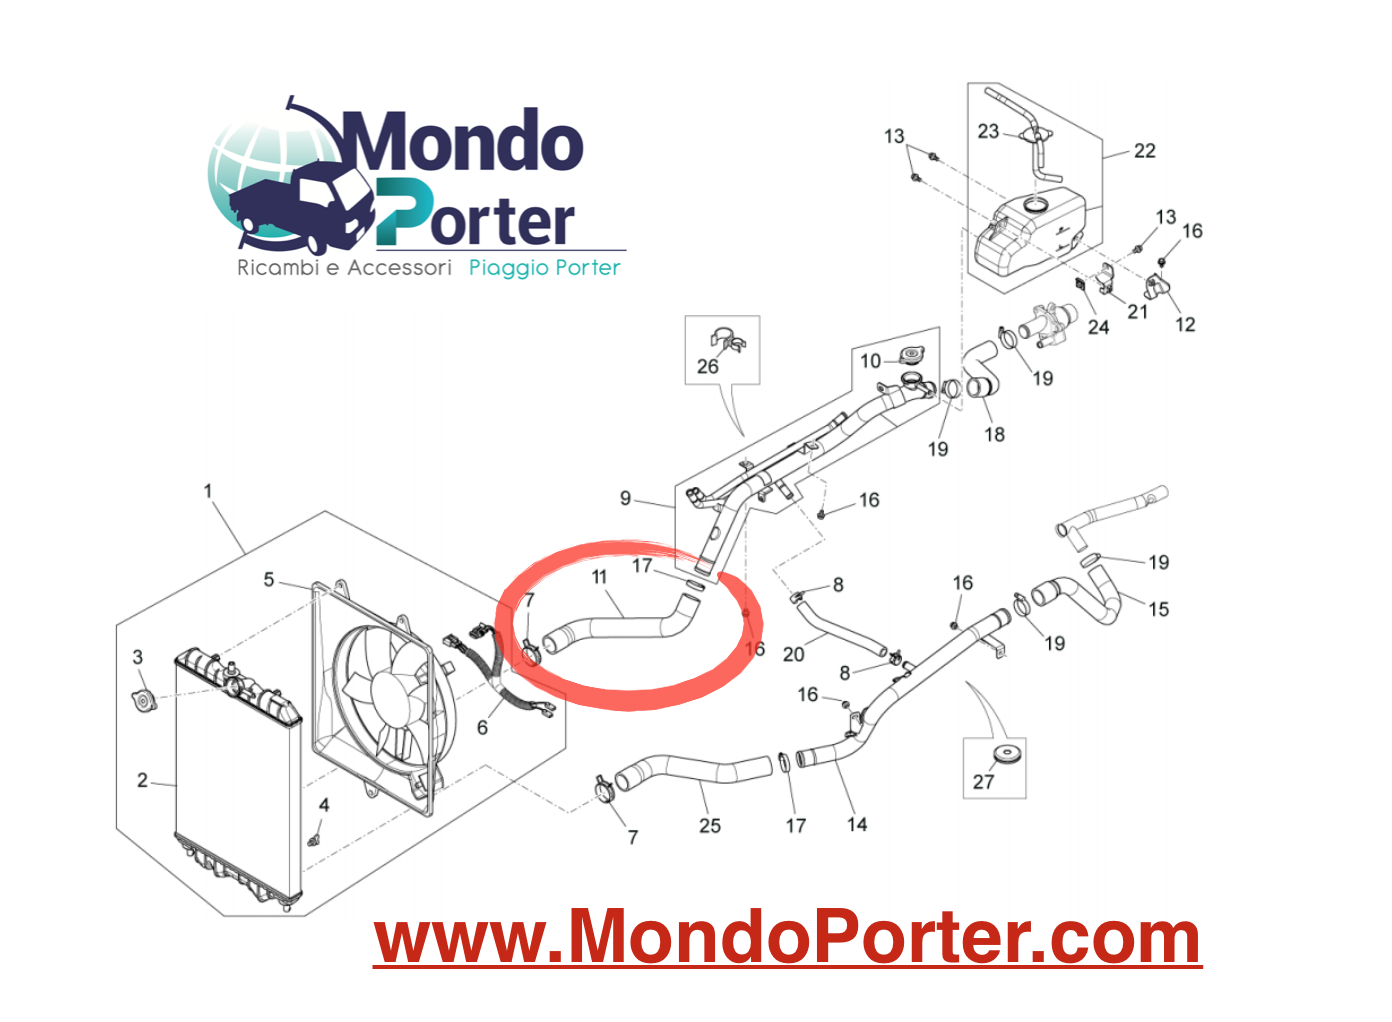 Manicotto Radiatore Piaggio Porter Multitech B004741 - Mondo Porter